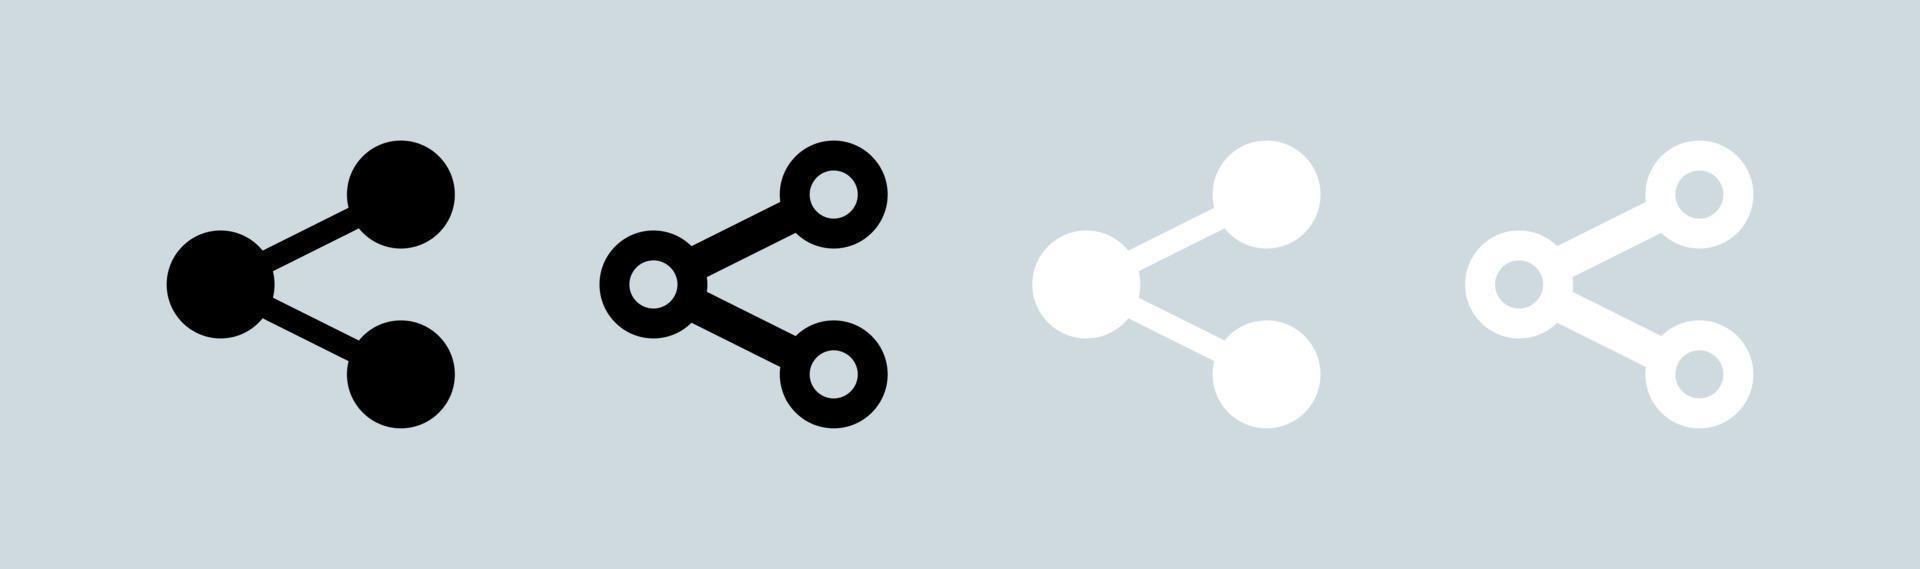 compartir iconos establecidos en colores blanco y negro. conectar, compartir datos, símbolo de enlace, compartir red, compartir conjunto de botones de iconos. vector